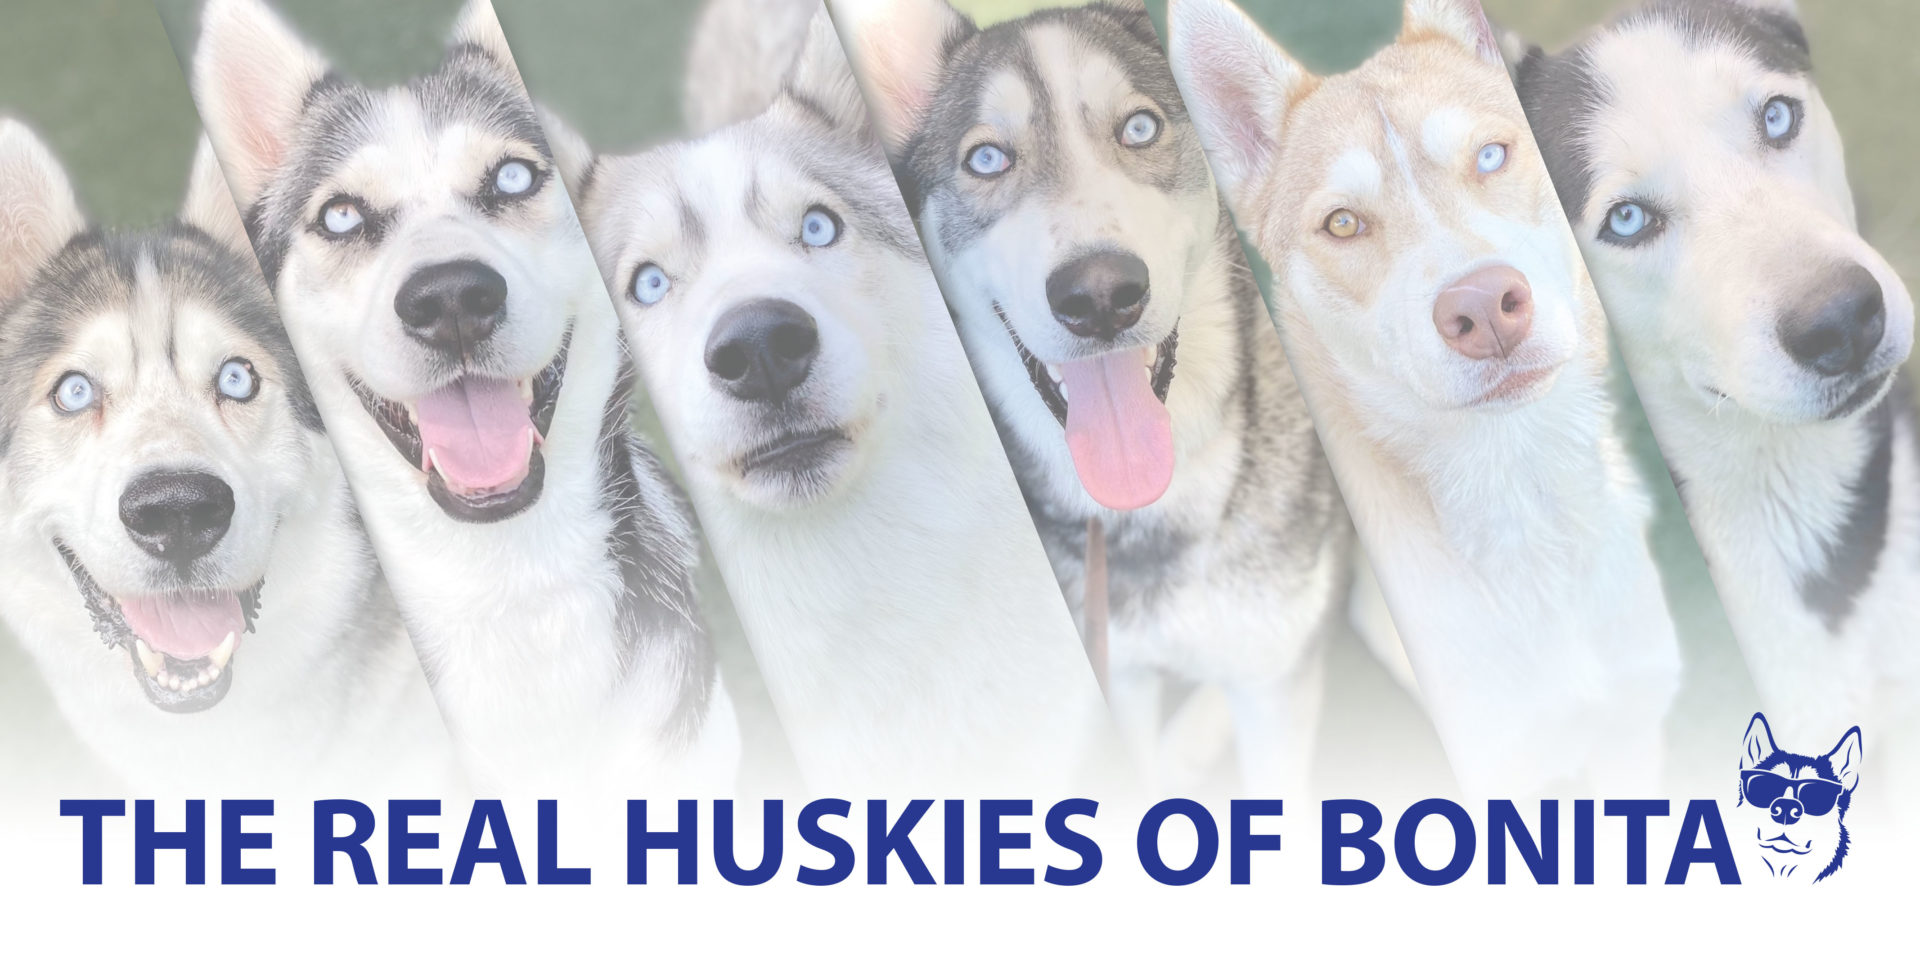 Six Huskie Dogs